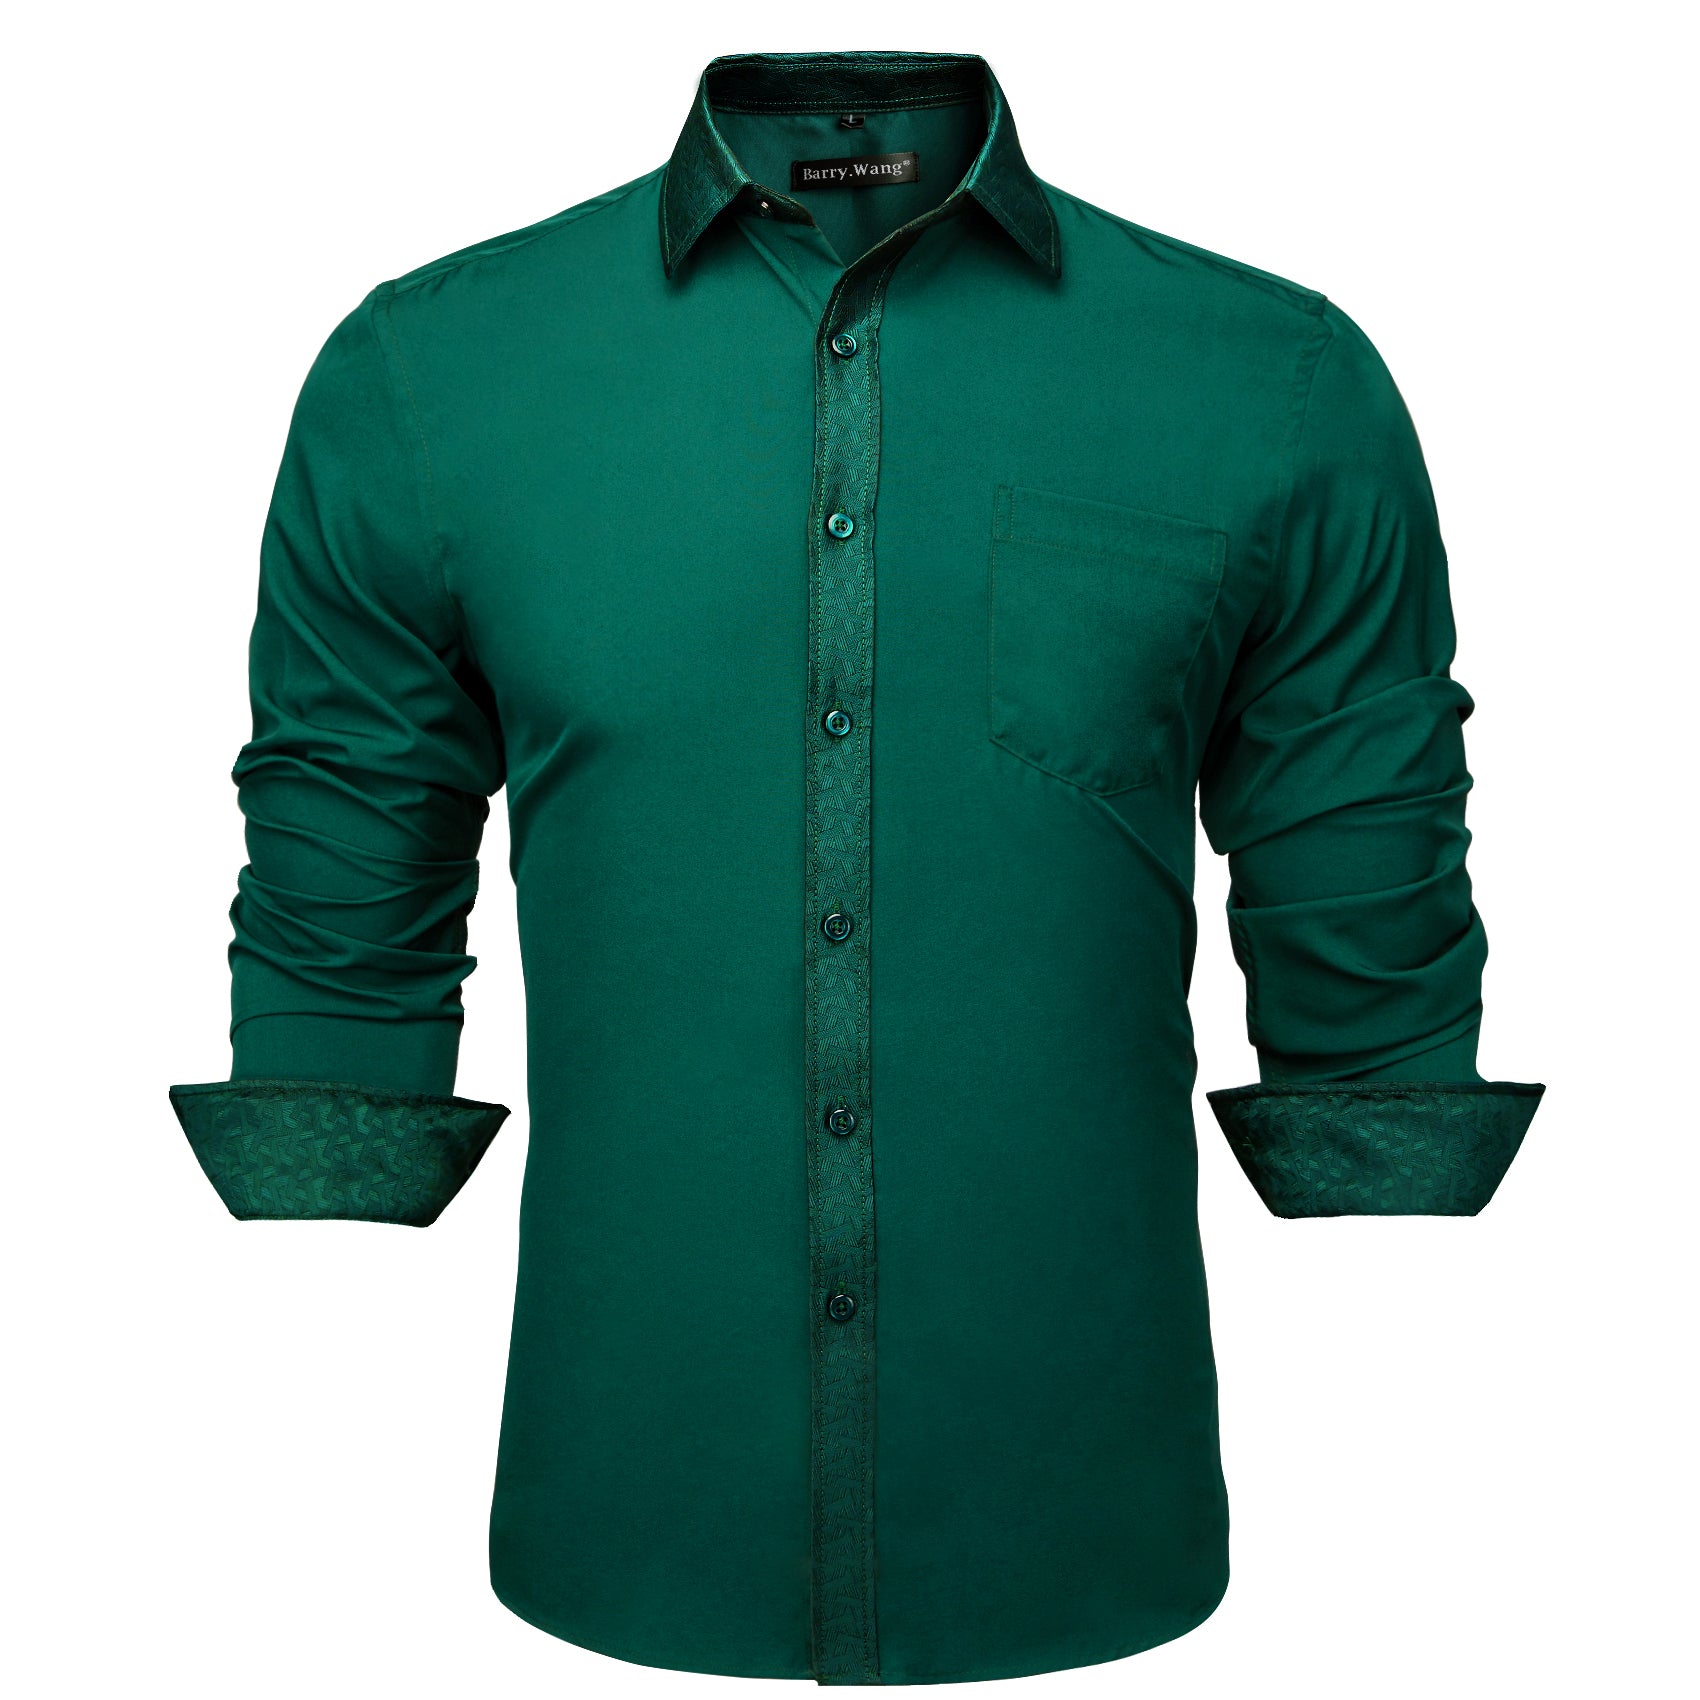 Barry.wang Fashion Green Splicing Men's Business Shirt